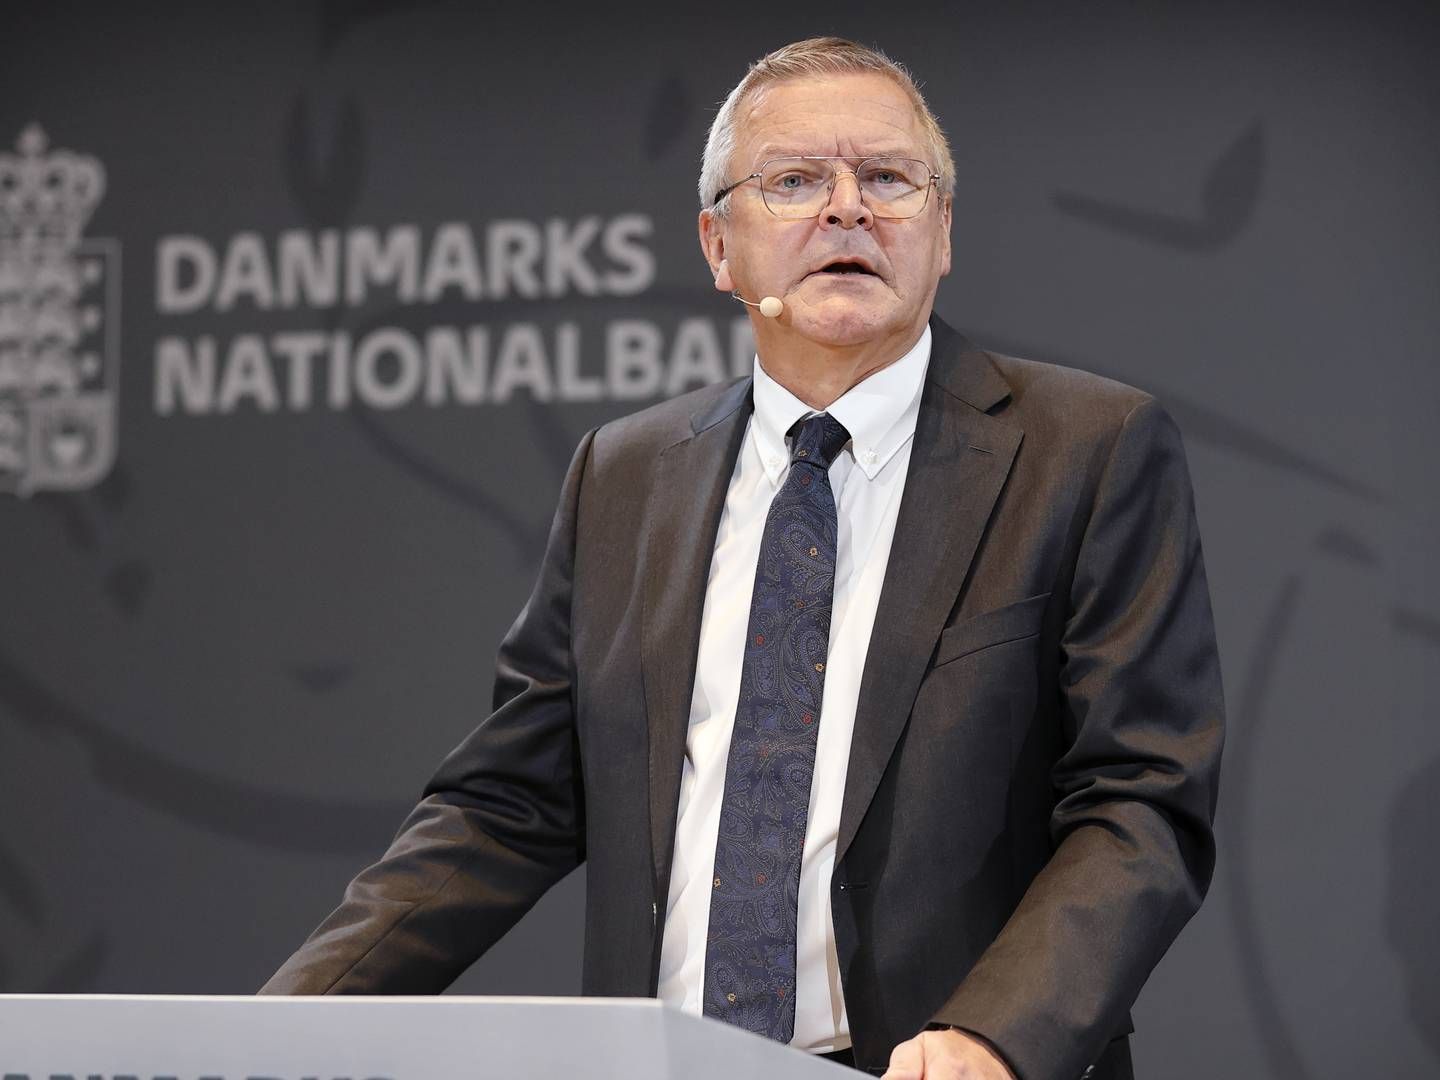 Nationalbankens direktør Lars Rohde stopper senest ved udgangen af januar. | Foto: Jens Dresling